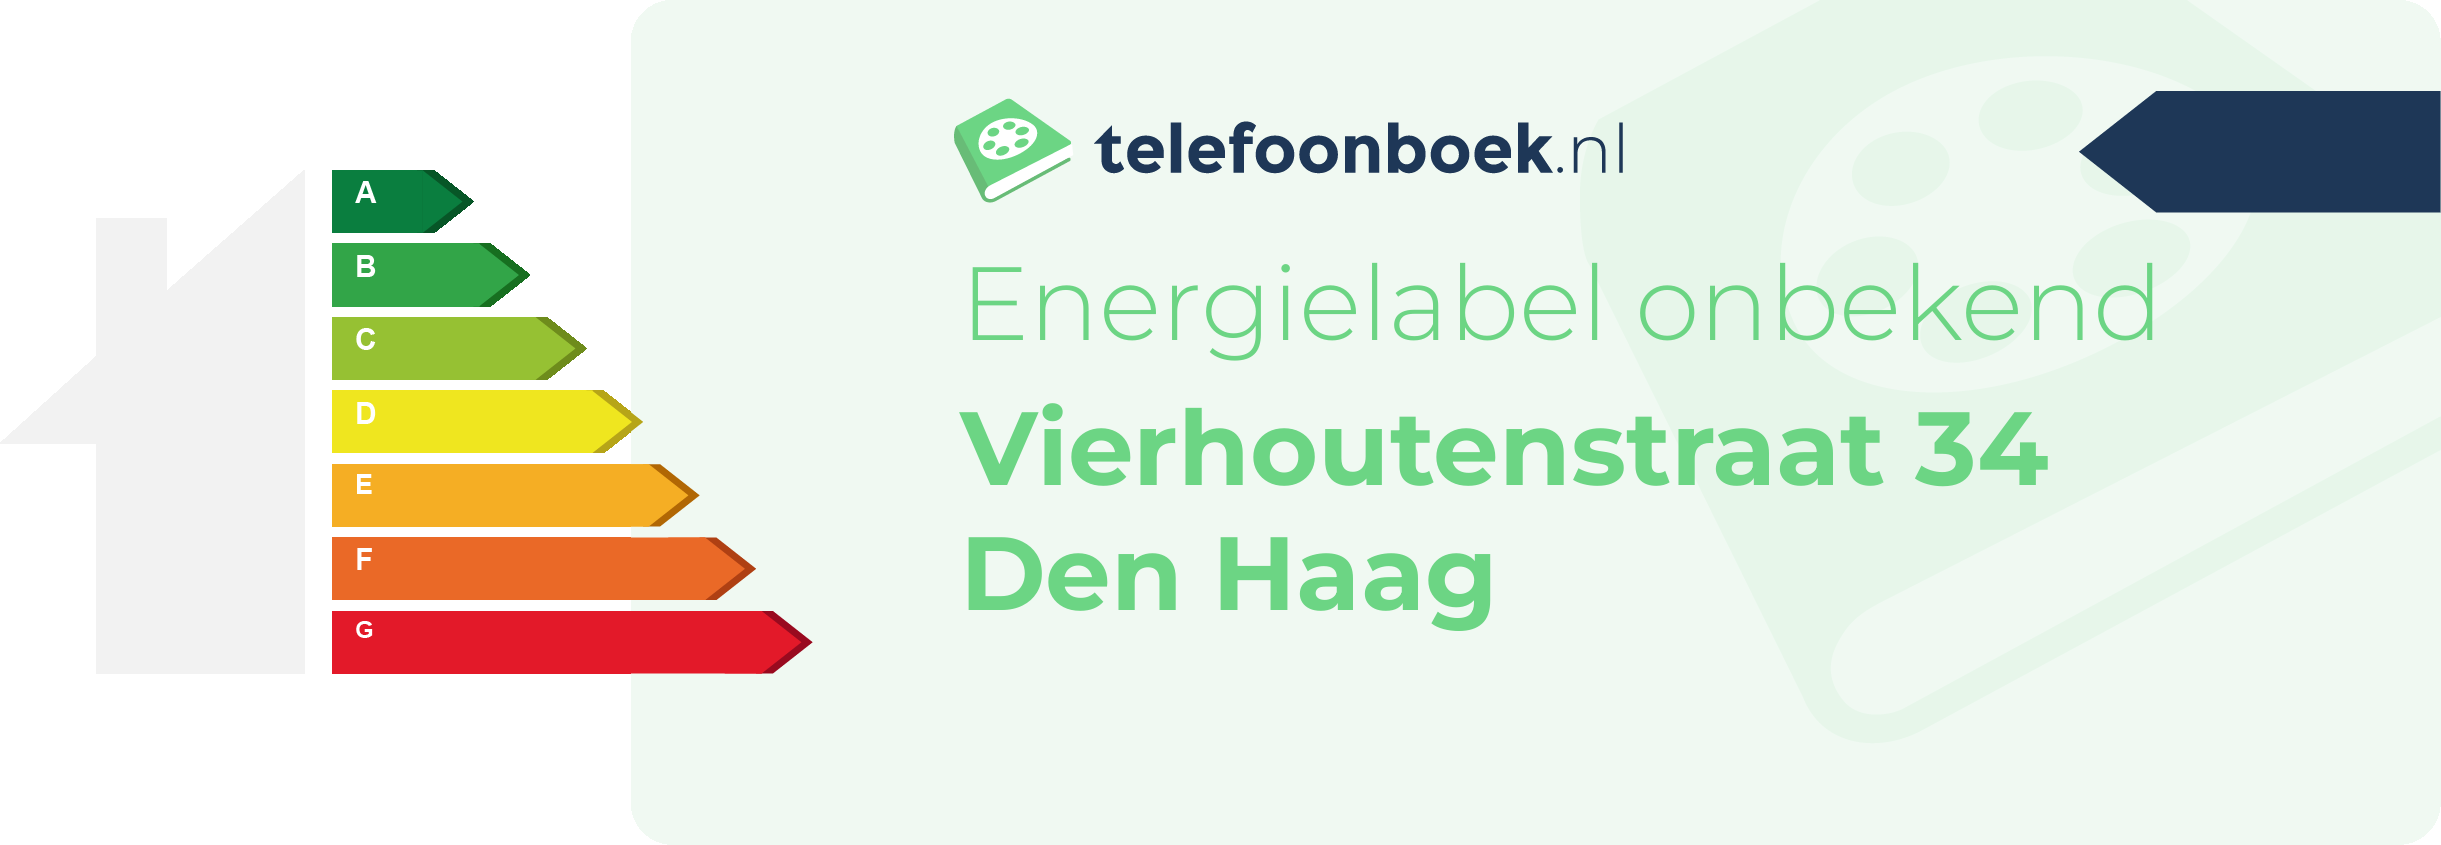 Energielabel Vierhoutenstraat 34 Den Haag